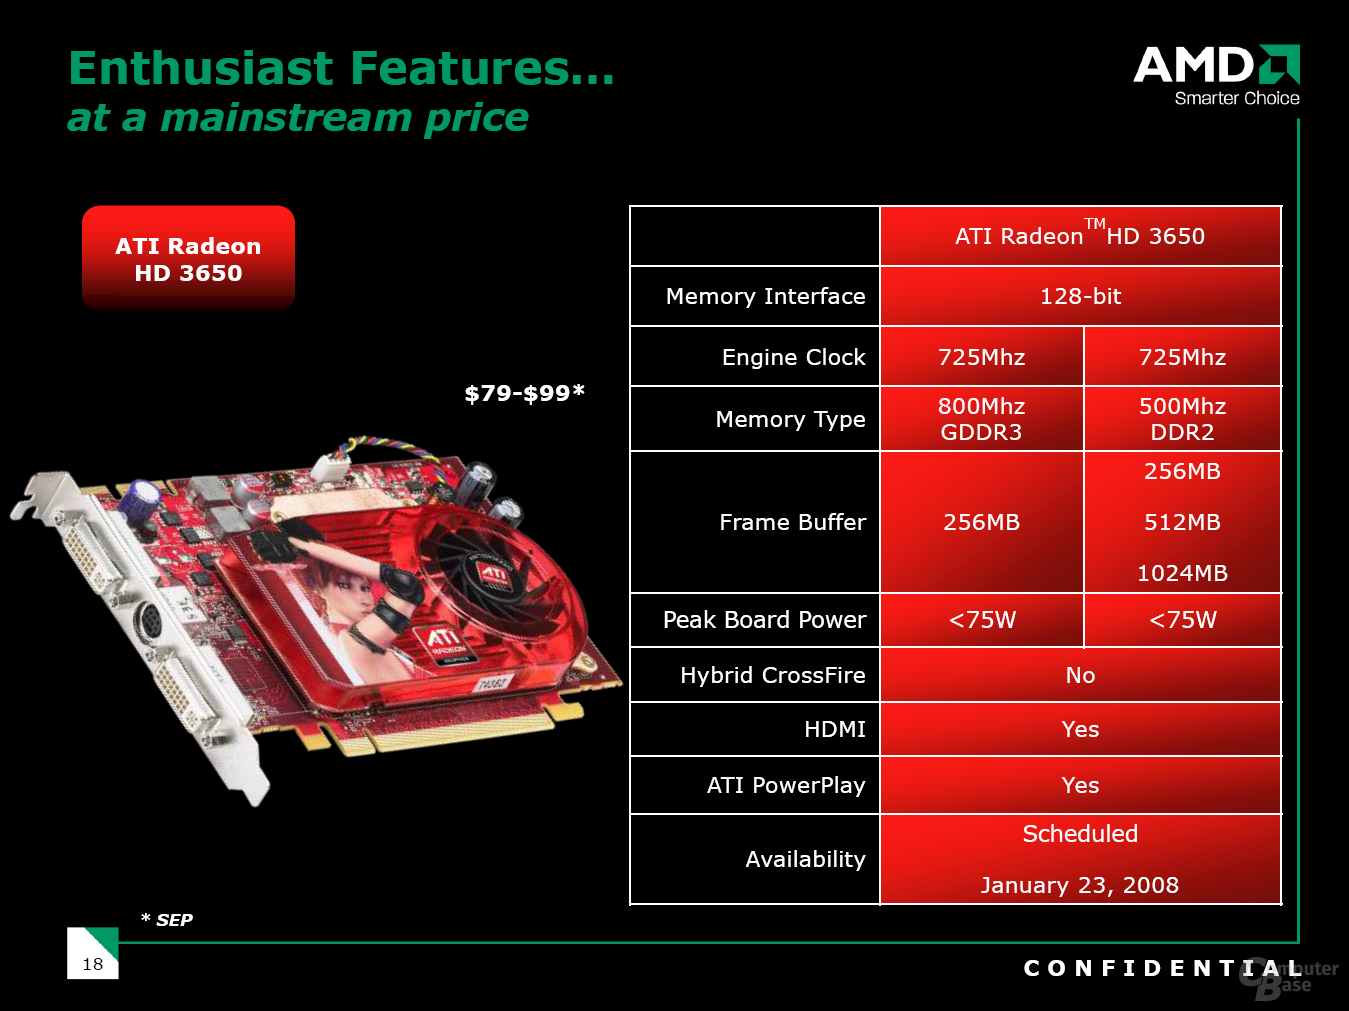 ATi Radeon HD 3650